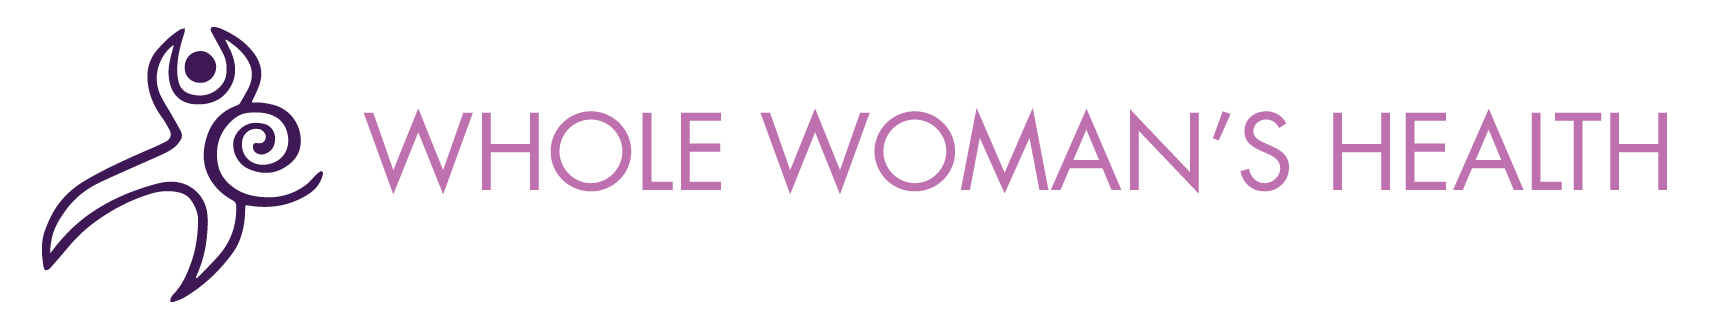 Logotipo completo de atención del aborto para la salud de la mujer